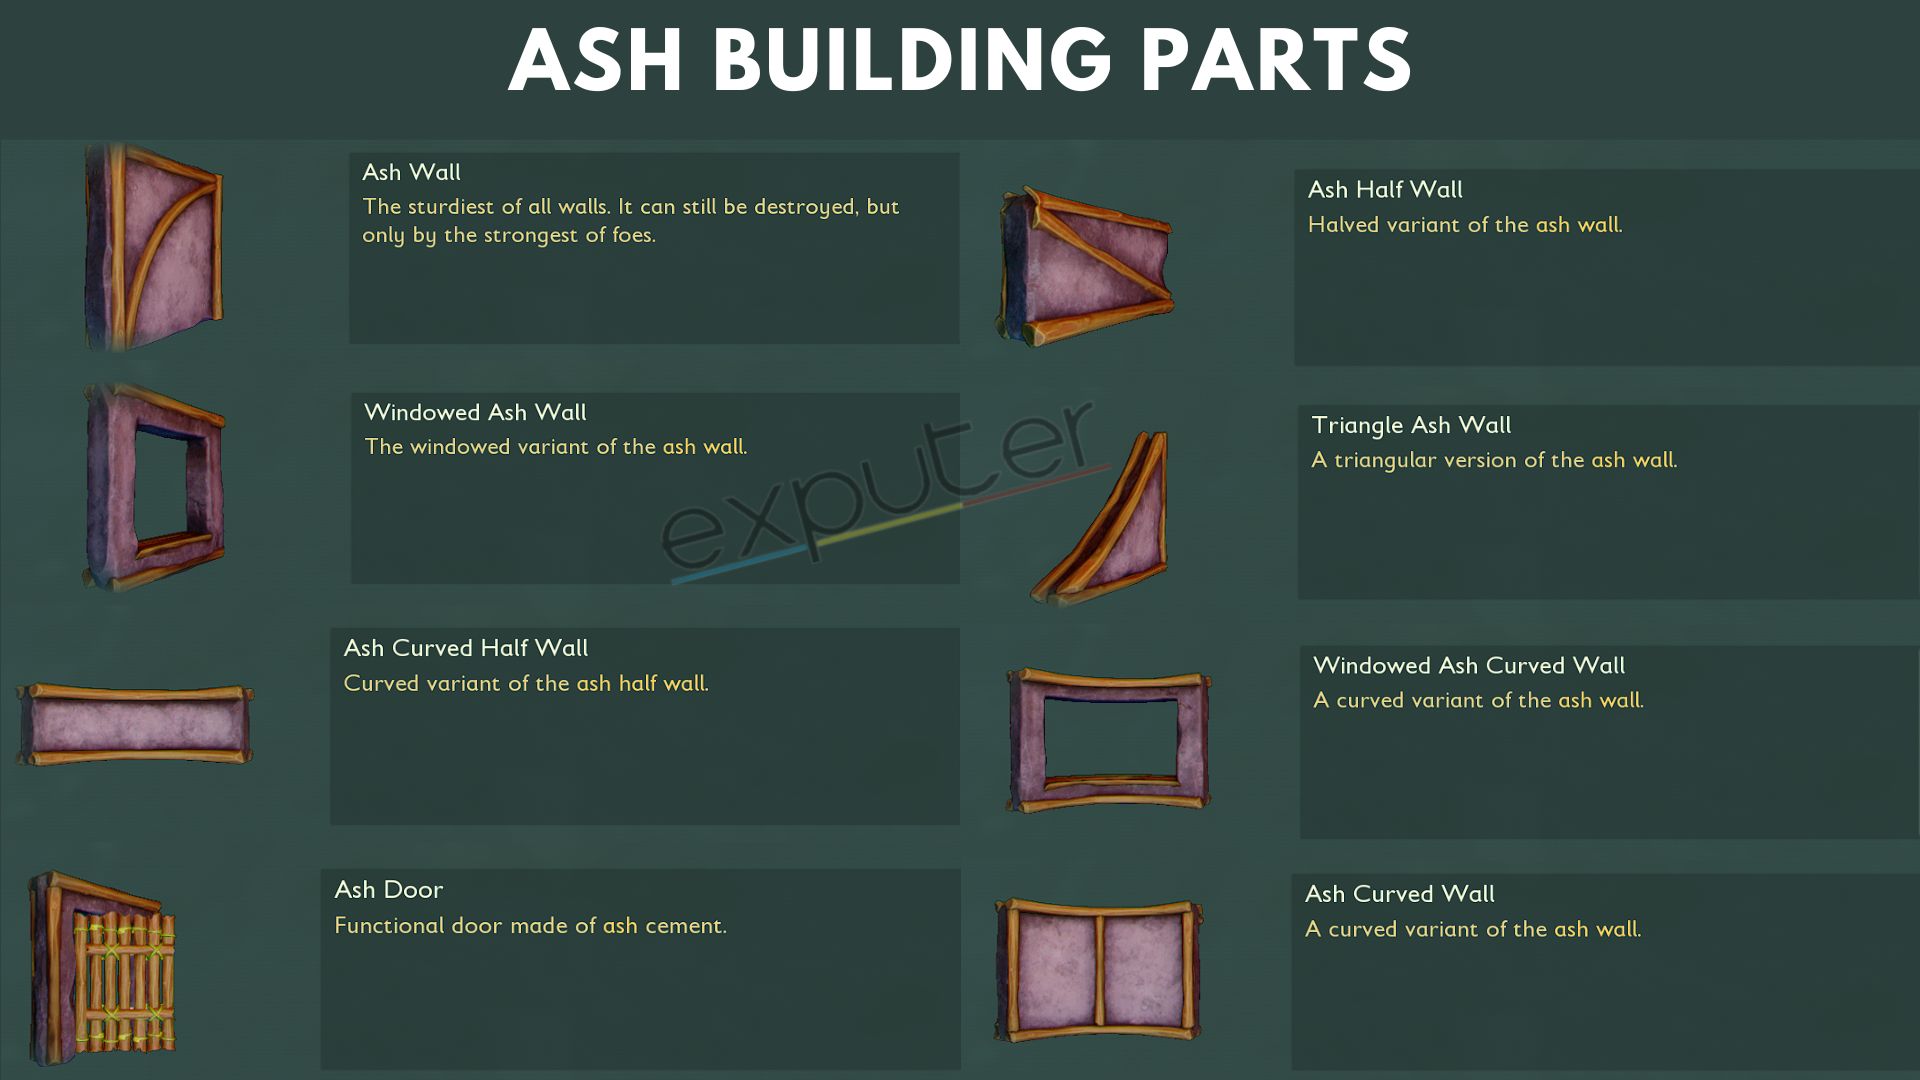 Ash building parts.